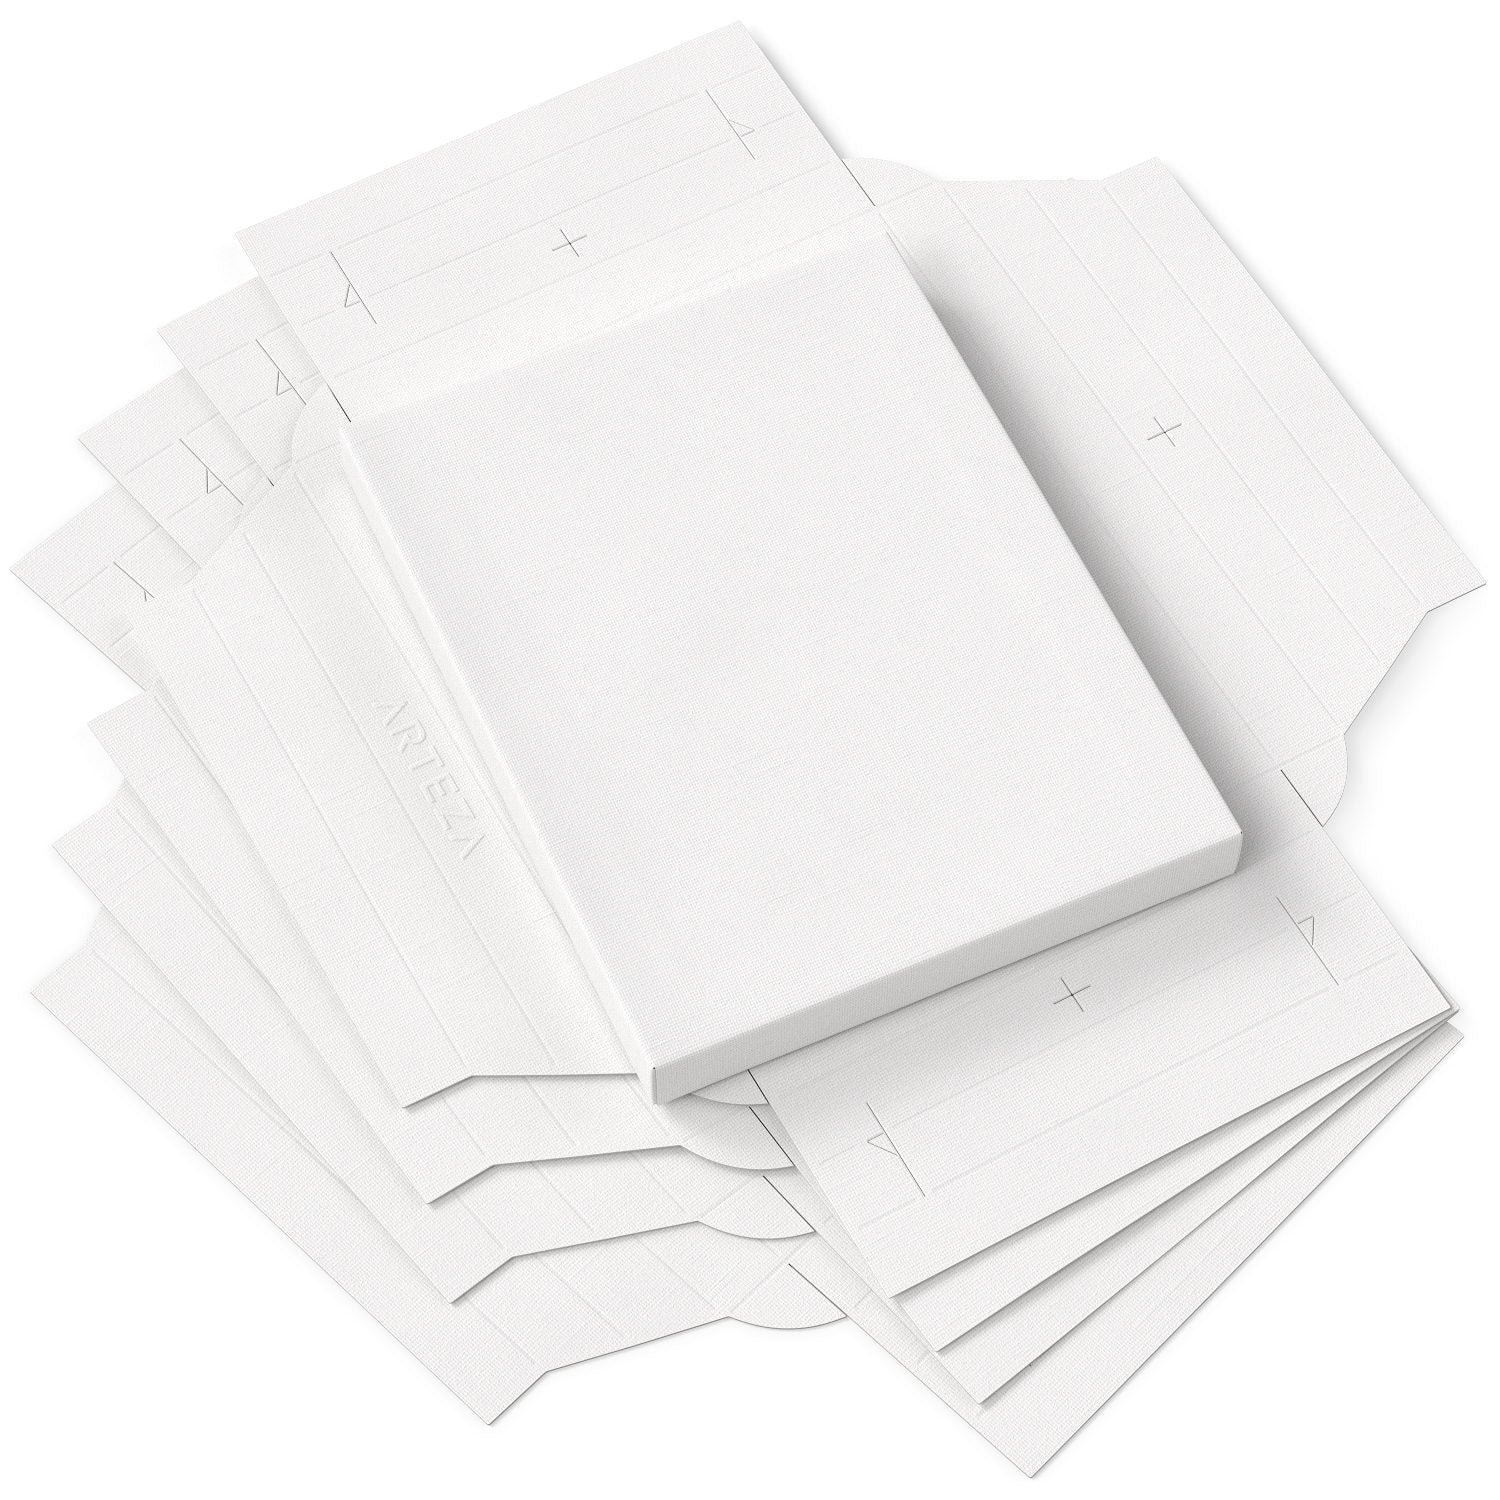 Ikshu Canvas Paper 25 Sheets UNRULD. A4 256 gsm Canvas Paper  - Canvas Paper